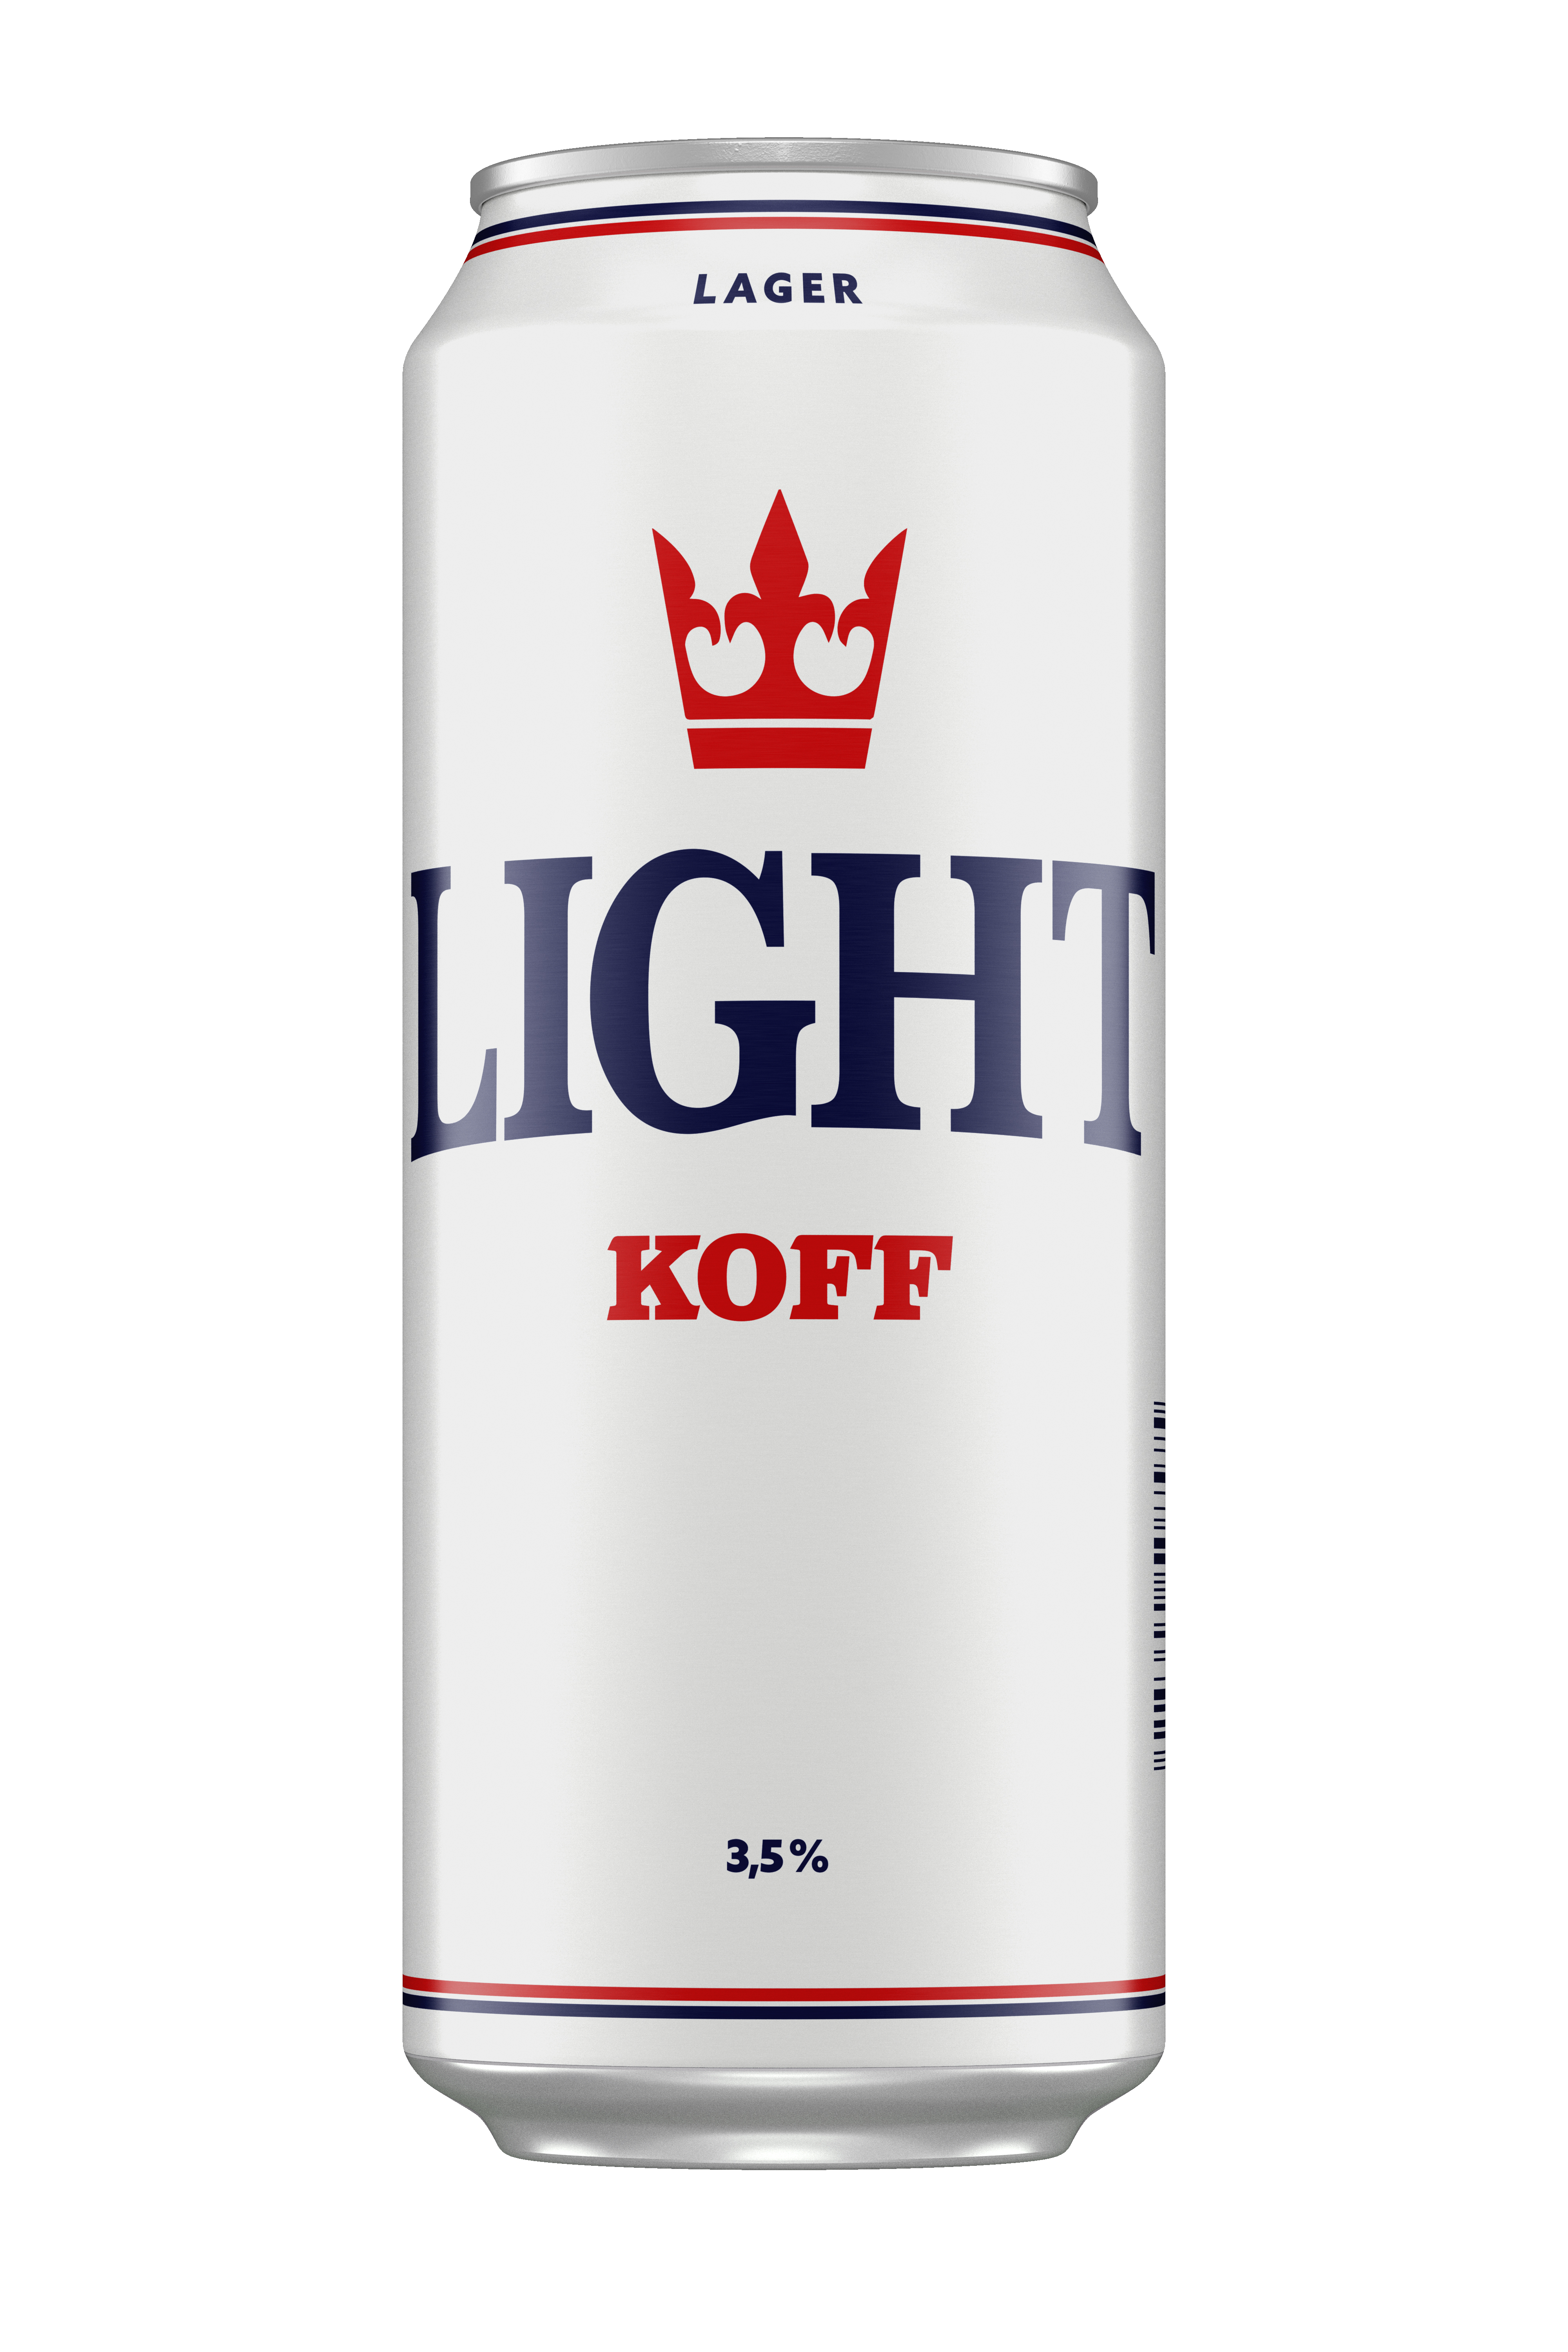 KOFF Light 3,5%